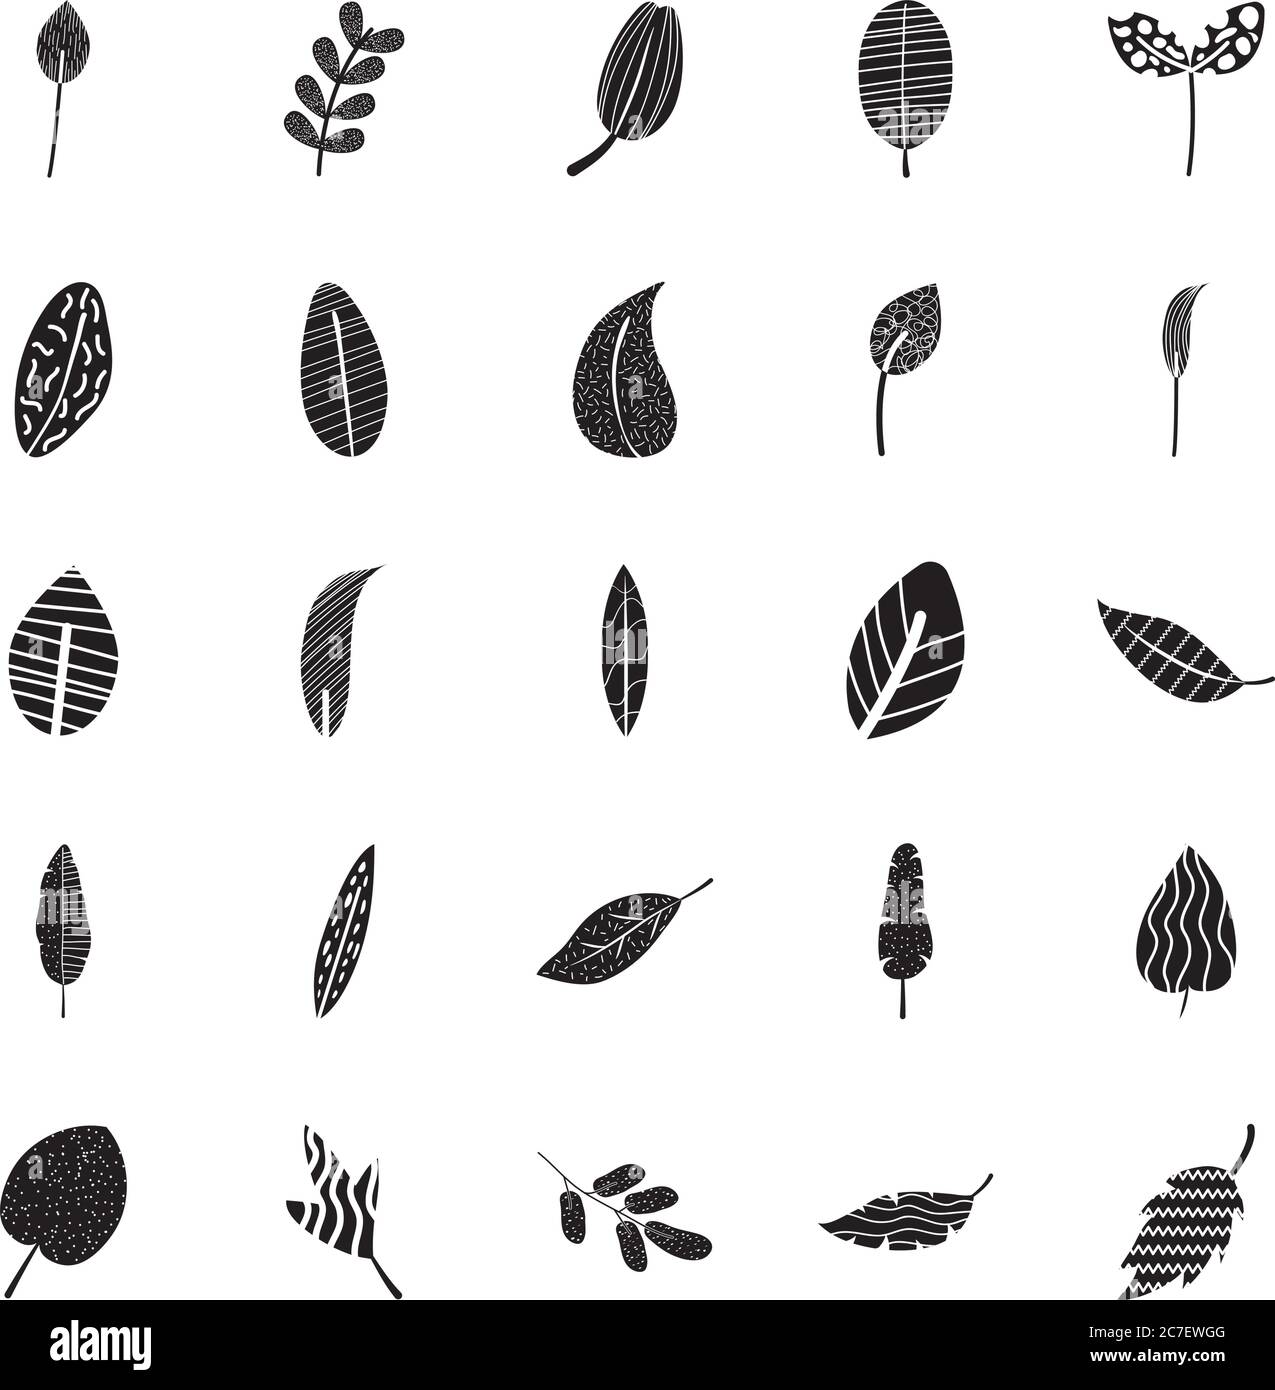 conjunto de iconos de hojas tropicales abstractas y coloridas sobre fondo blanco, estilo silueta, ilustración vectorial Ilustración del Vector